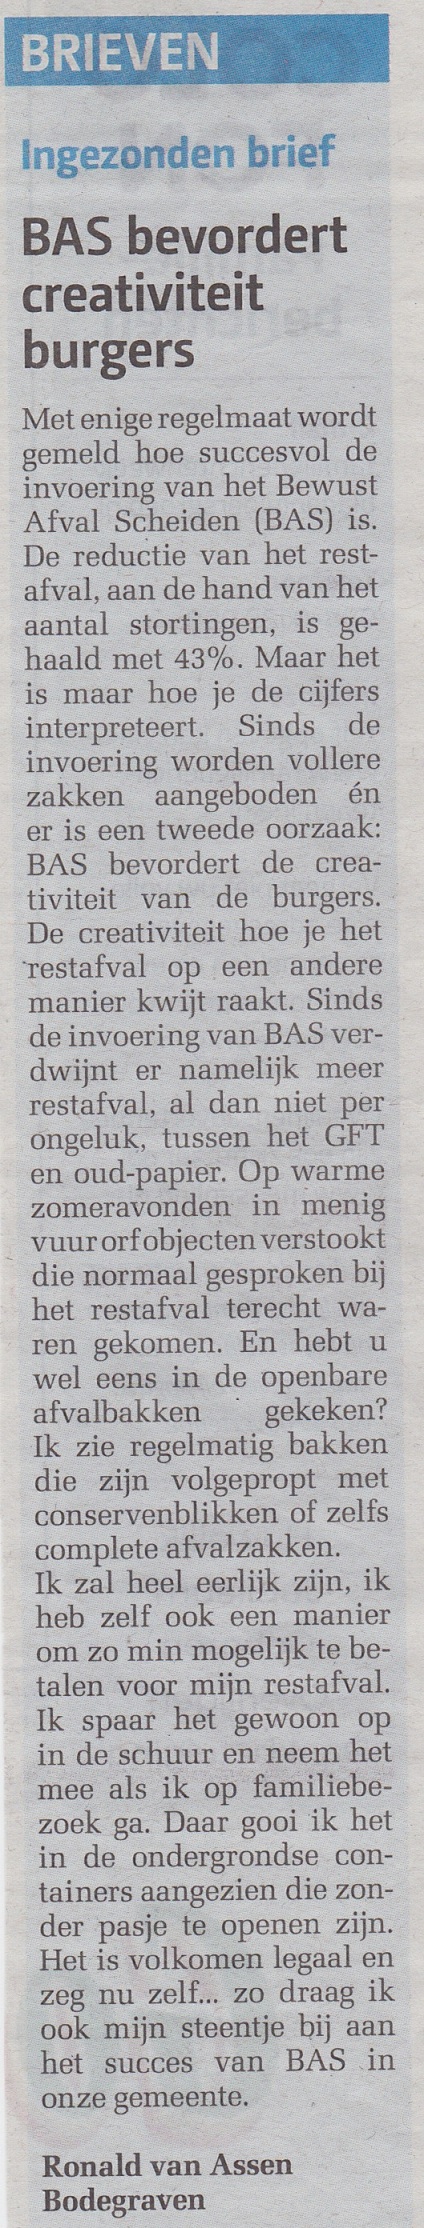 Bodegraafs Nieuwsblad (03-11-2016)